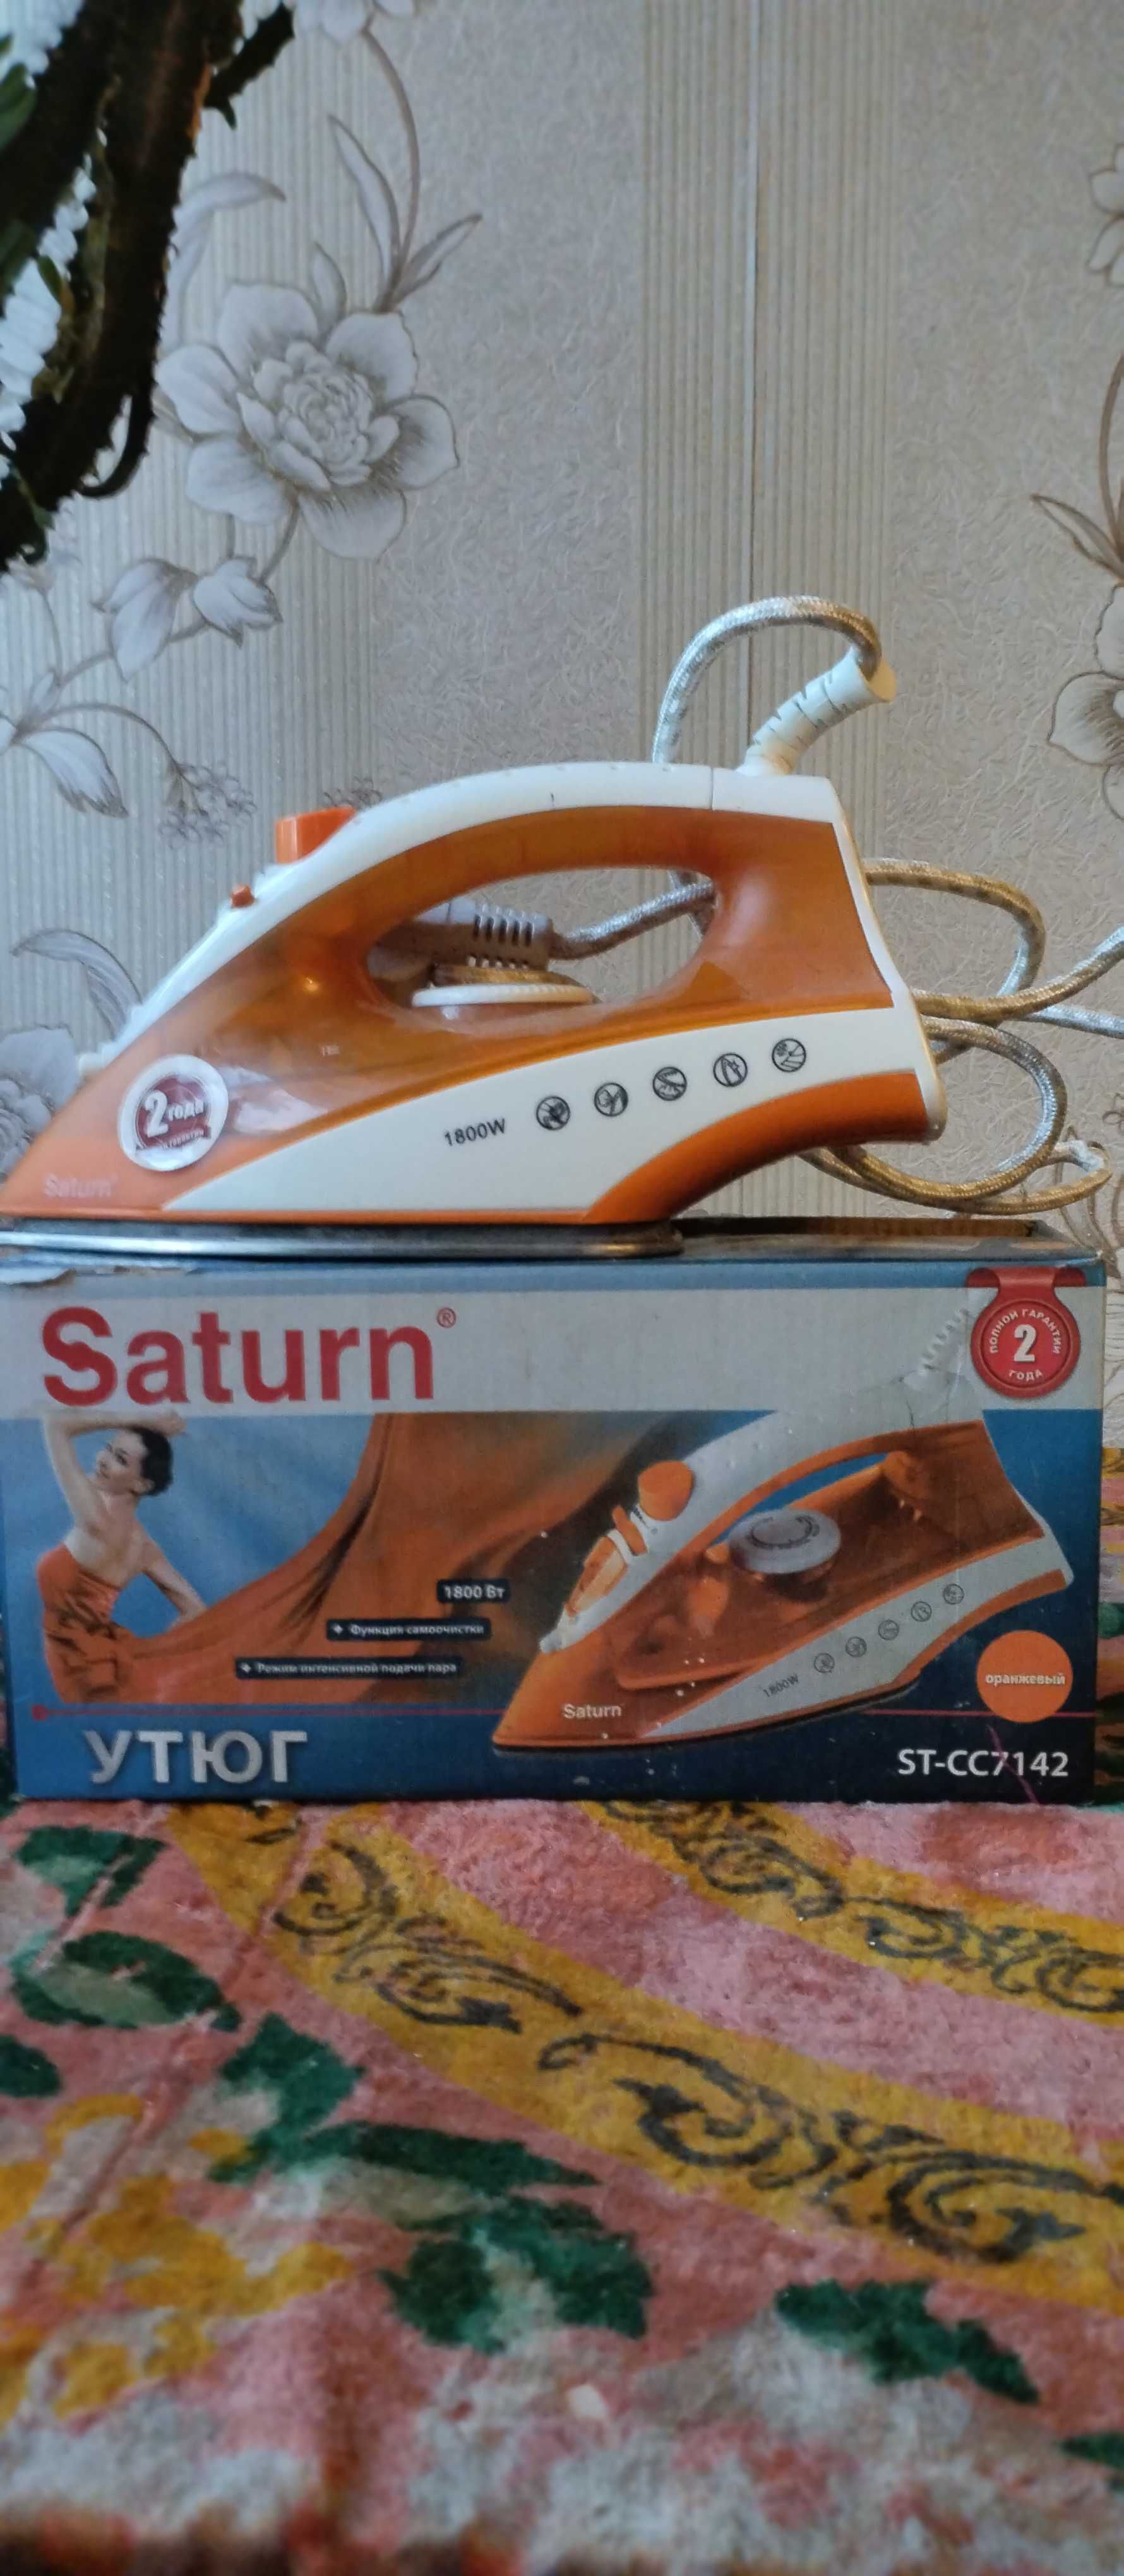 Праска (Saturn) ST-CC7142